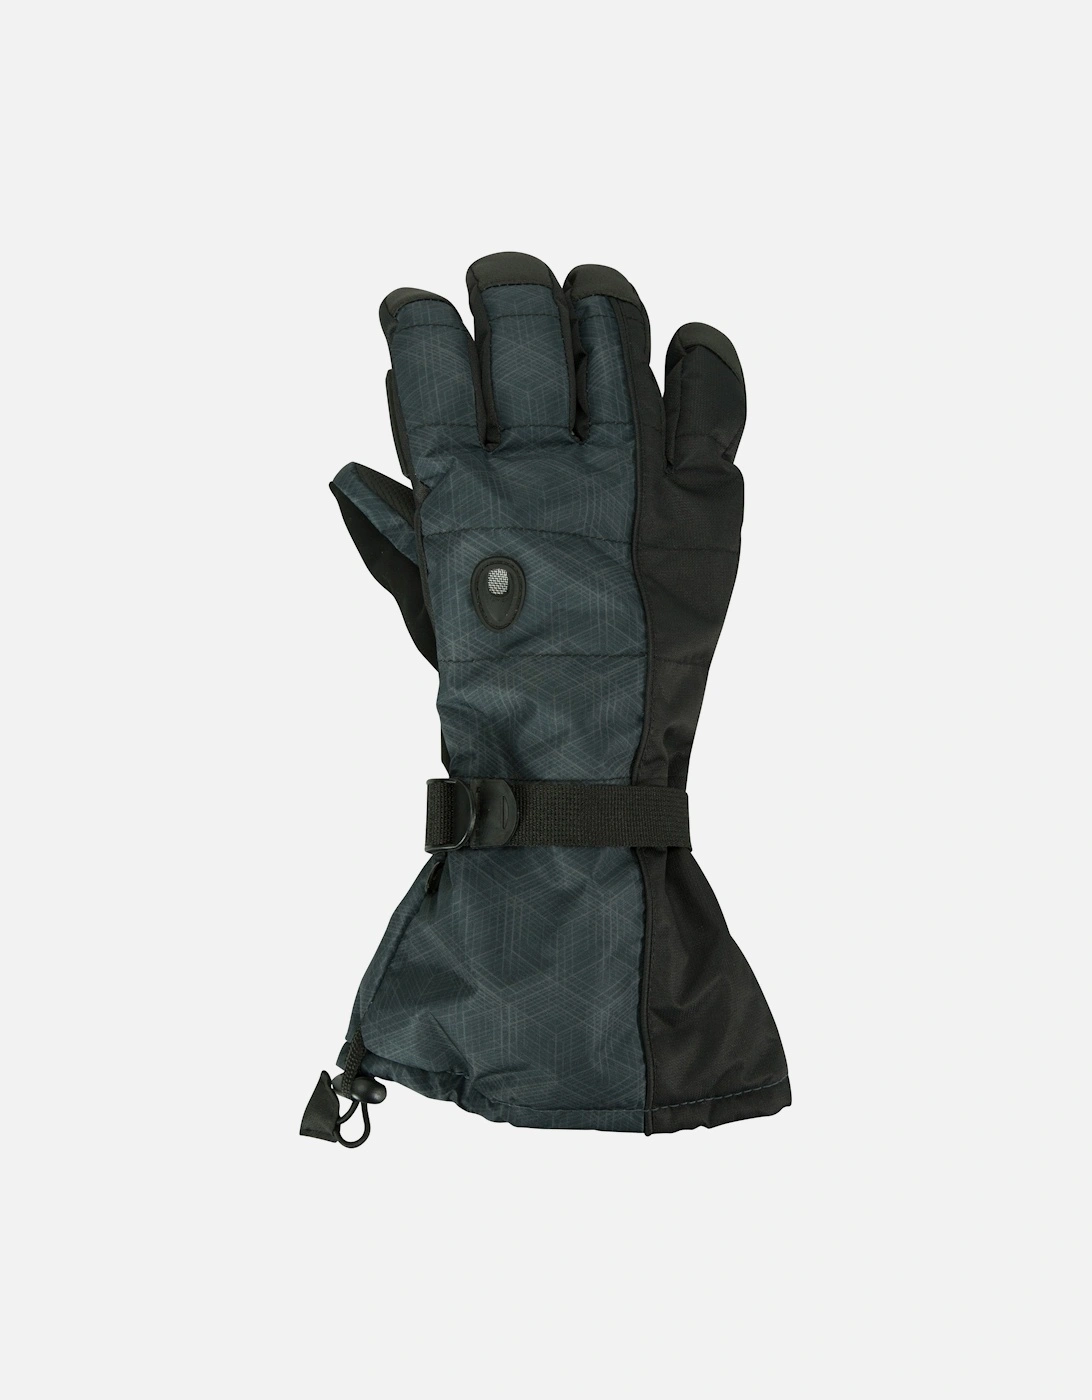 Mens Mountain Ski Gloves, 4 of 3